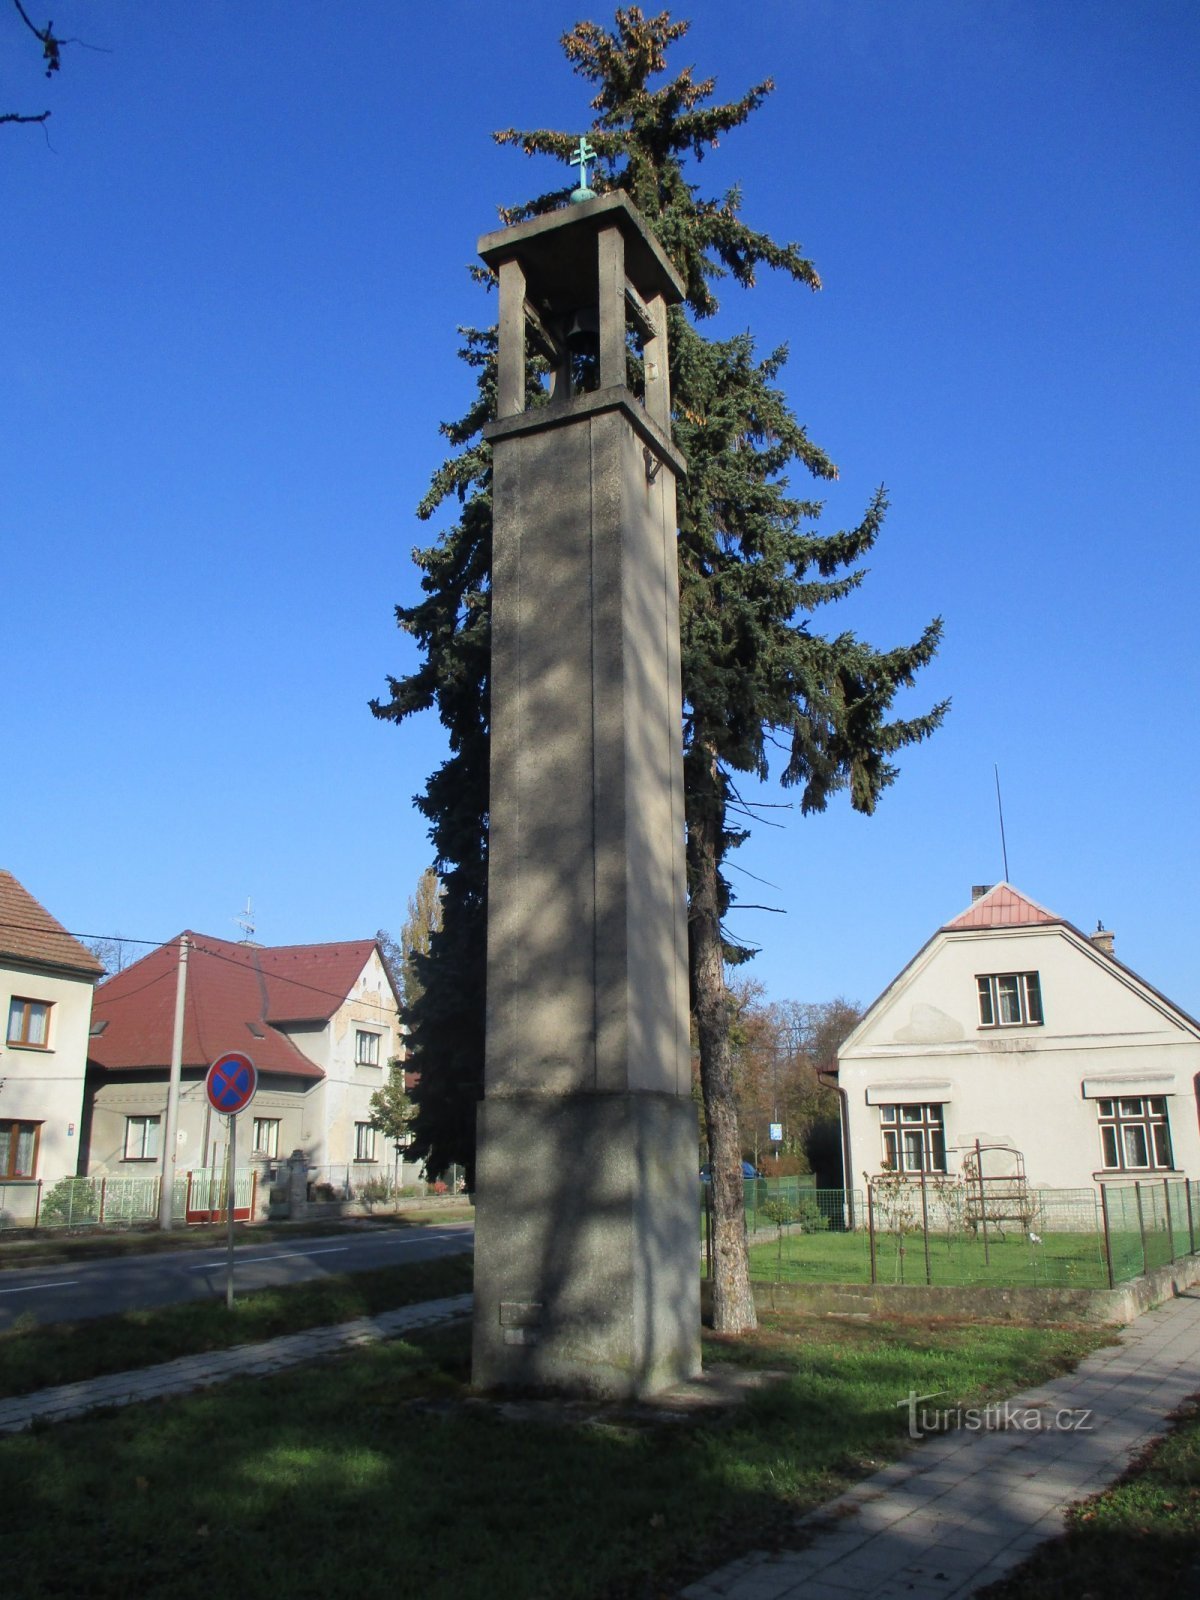 Колокольня чехословацкого костела в Поухове (Градец Кралове)